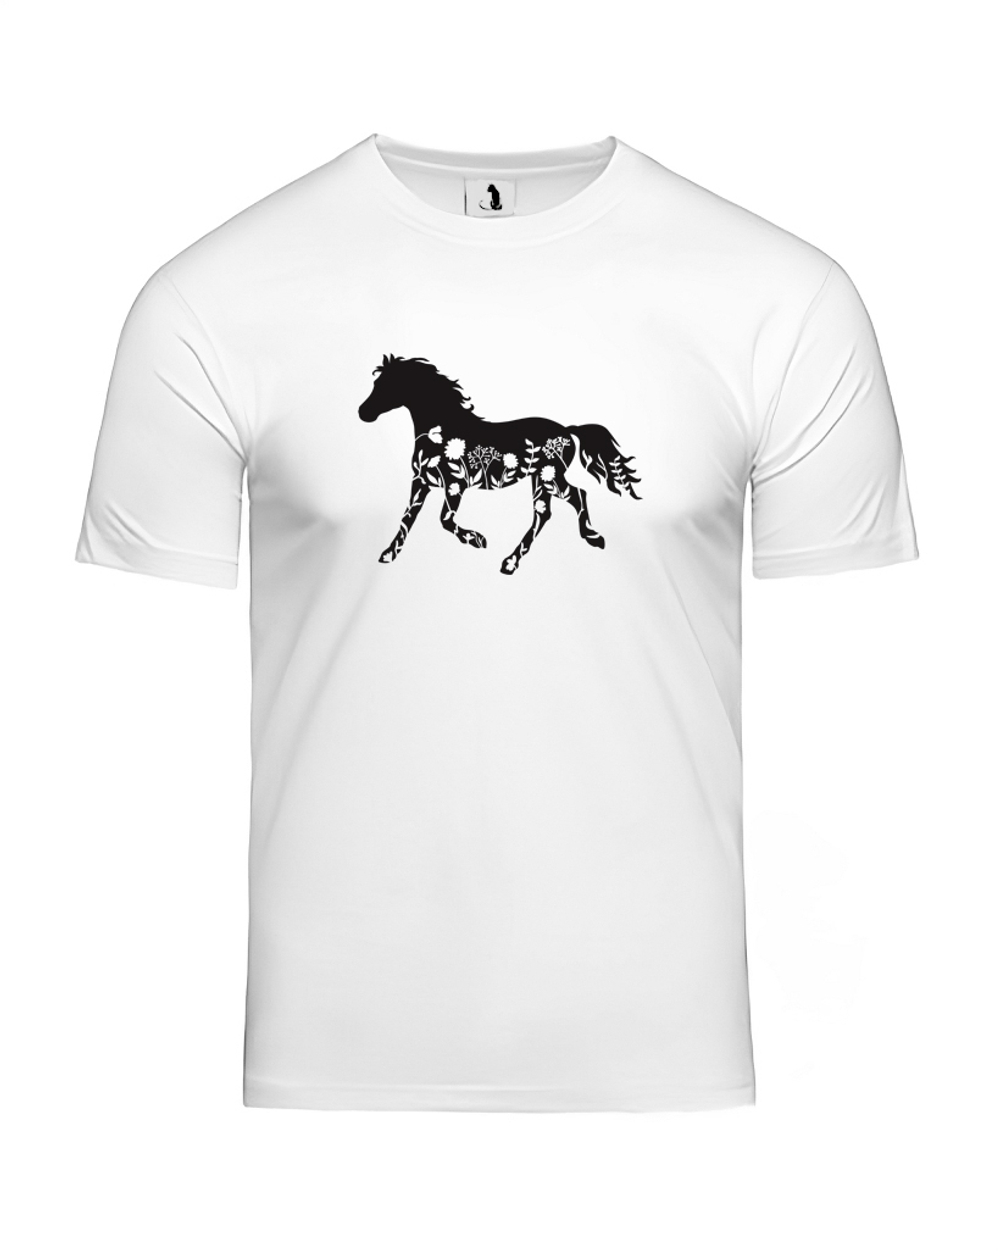 Футболка с лошадью и цветами unisex белая с черным рисунком